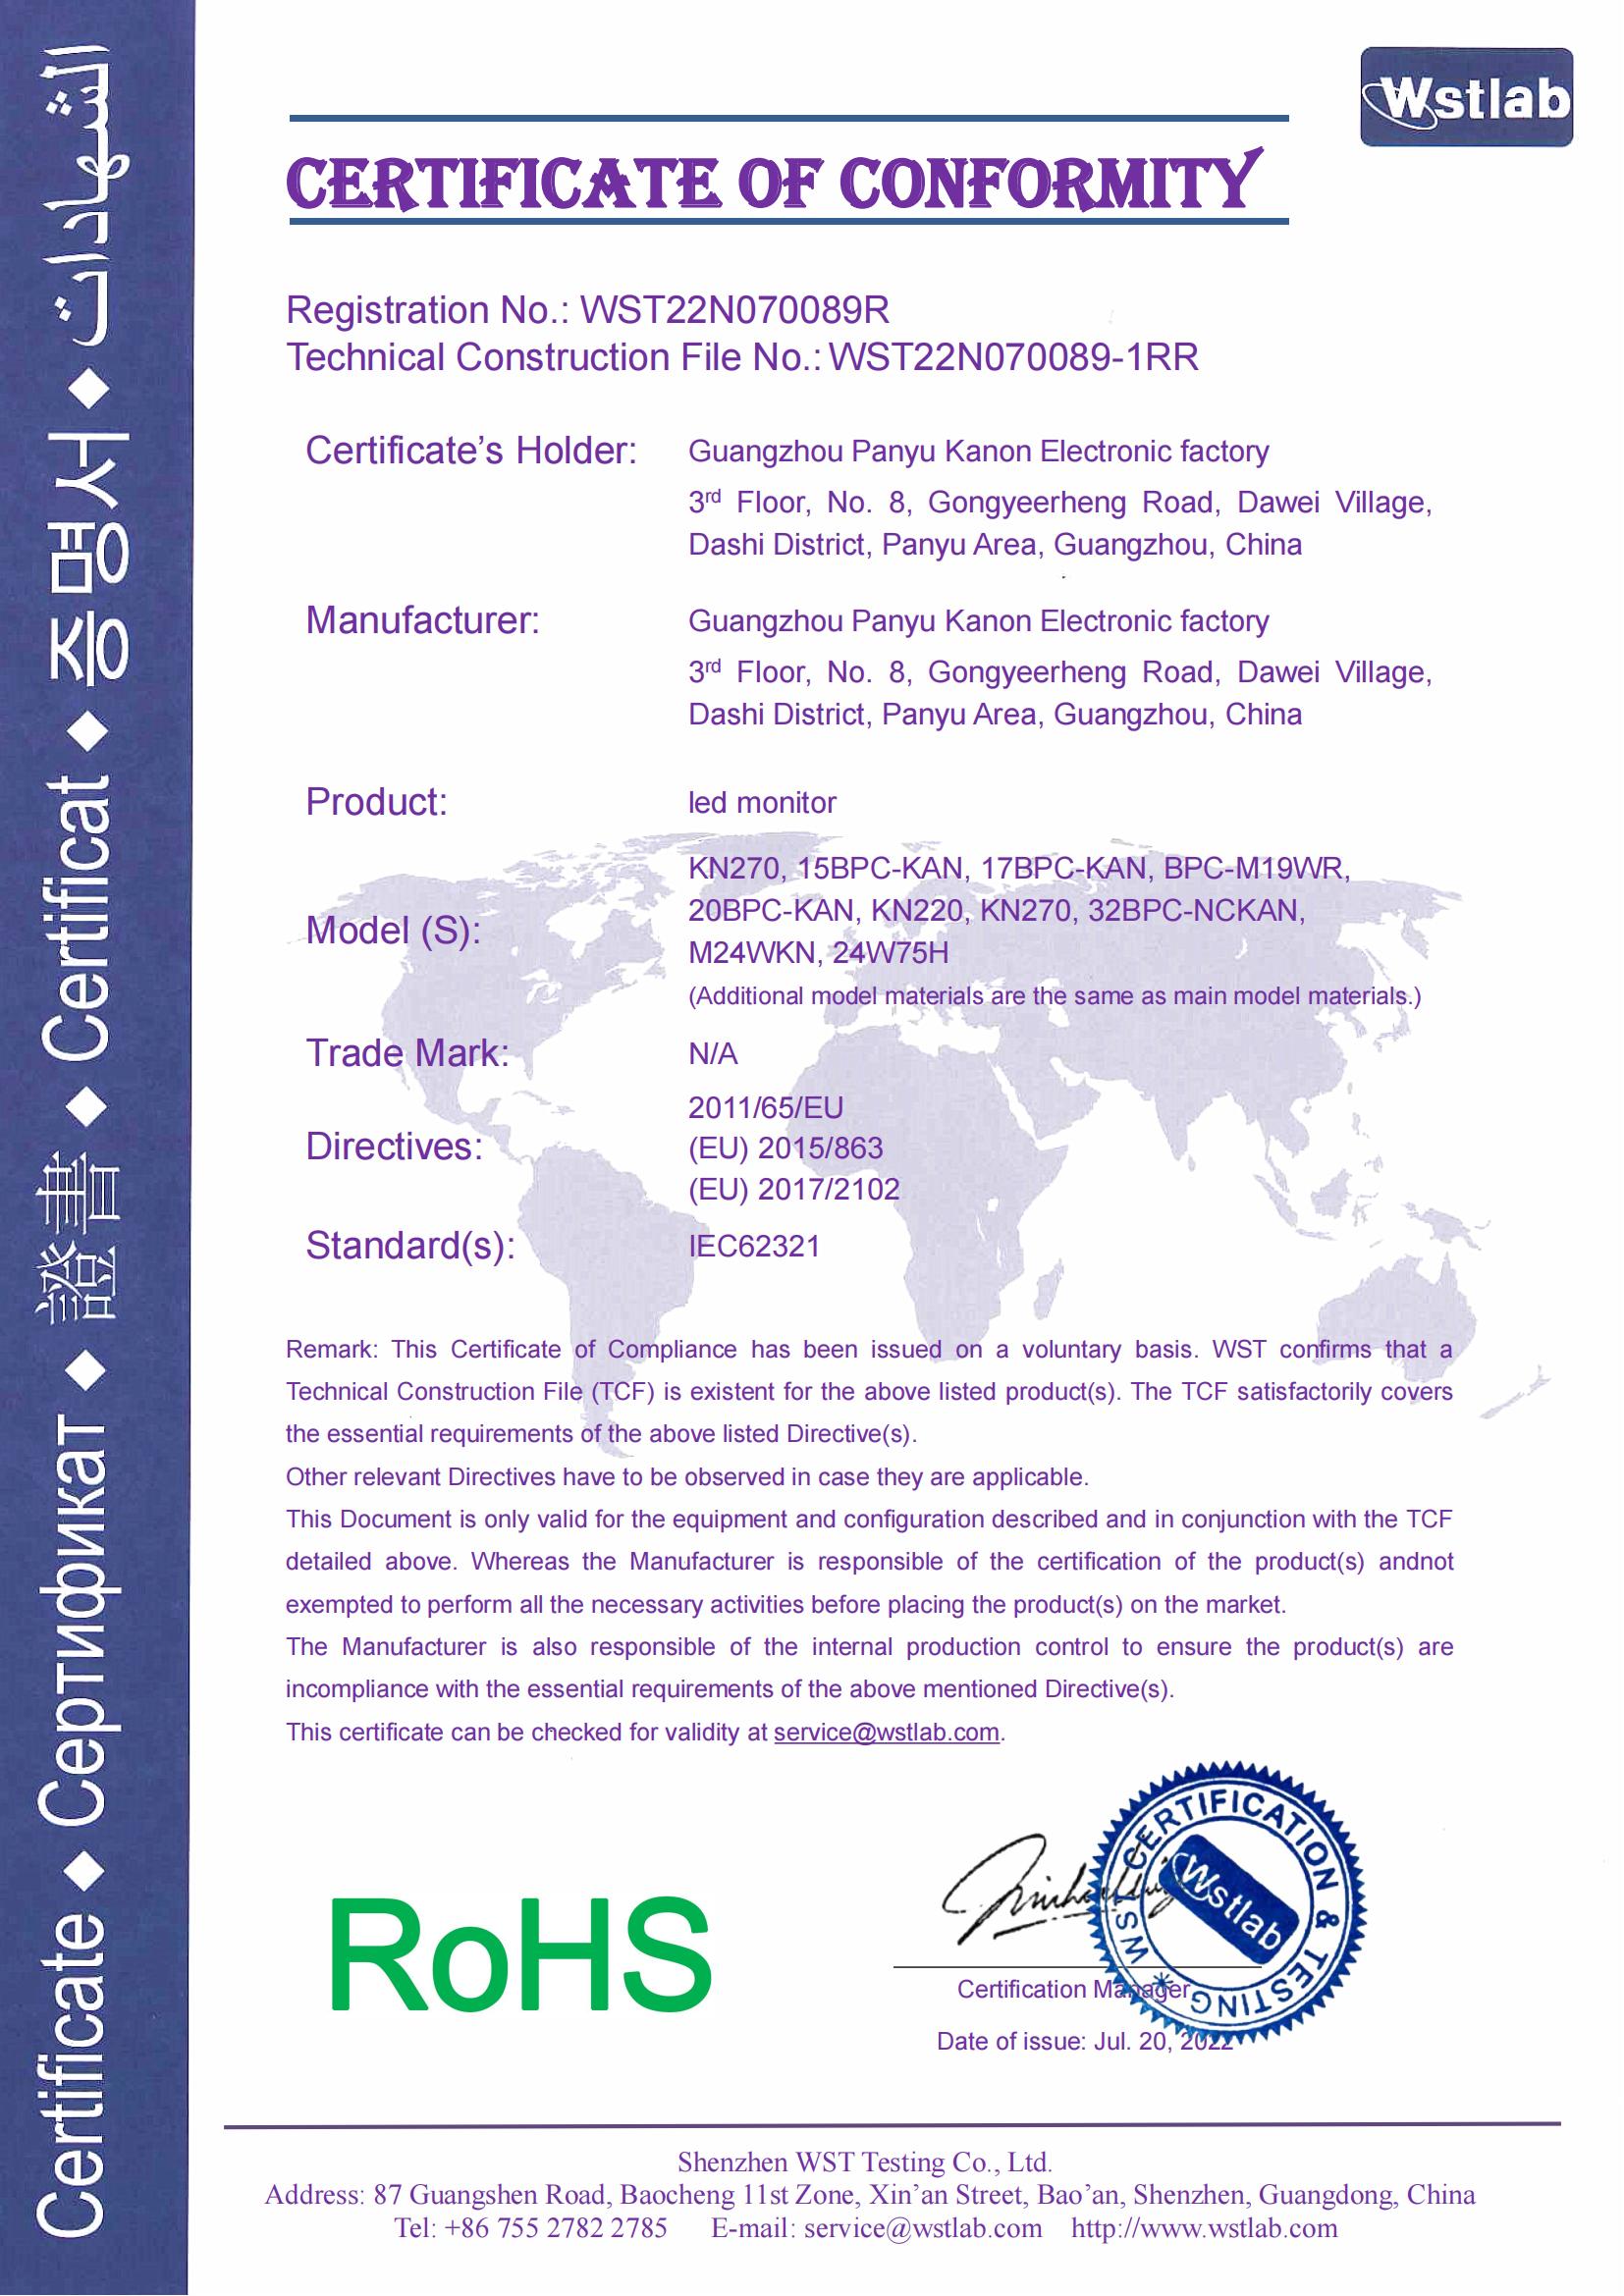 凯能液晶显示器-RoHS-证书-signed_00.jpg